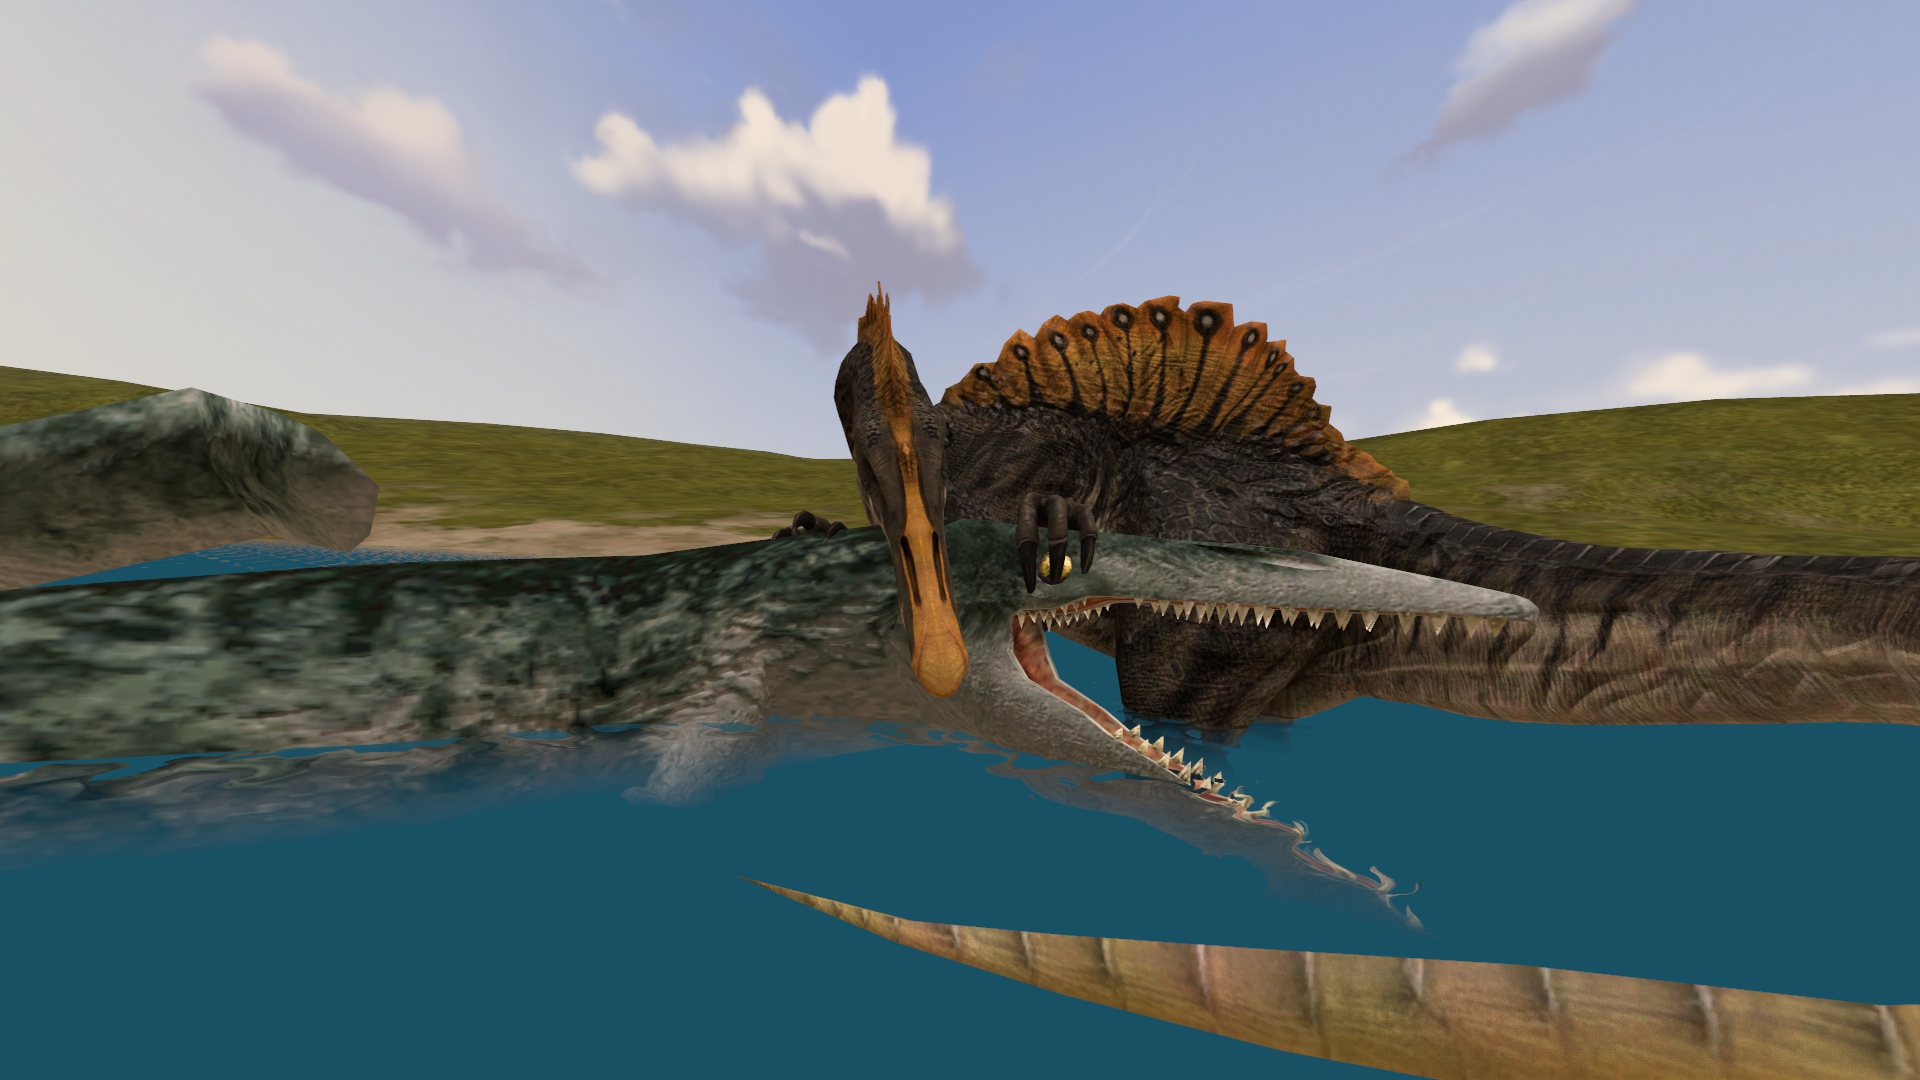 Spinosaurus vs Mosasaurus by kongzillarex619 on DeviantArt